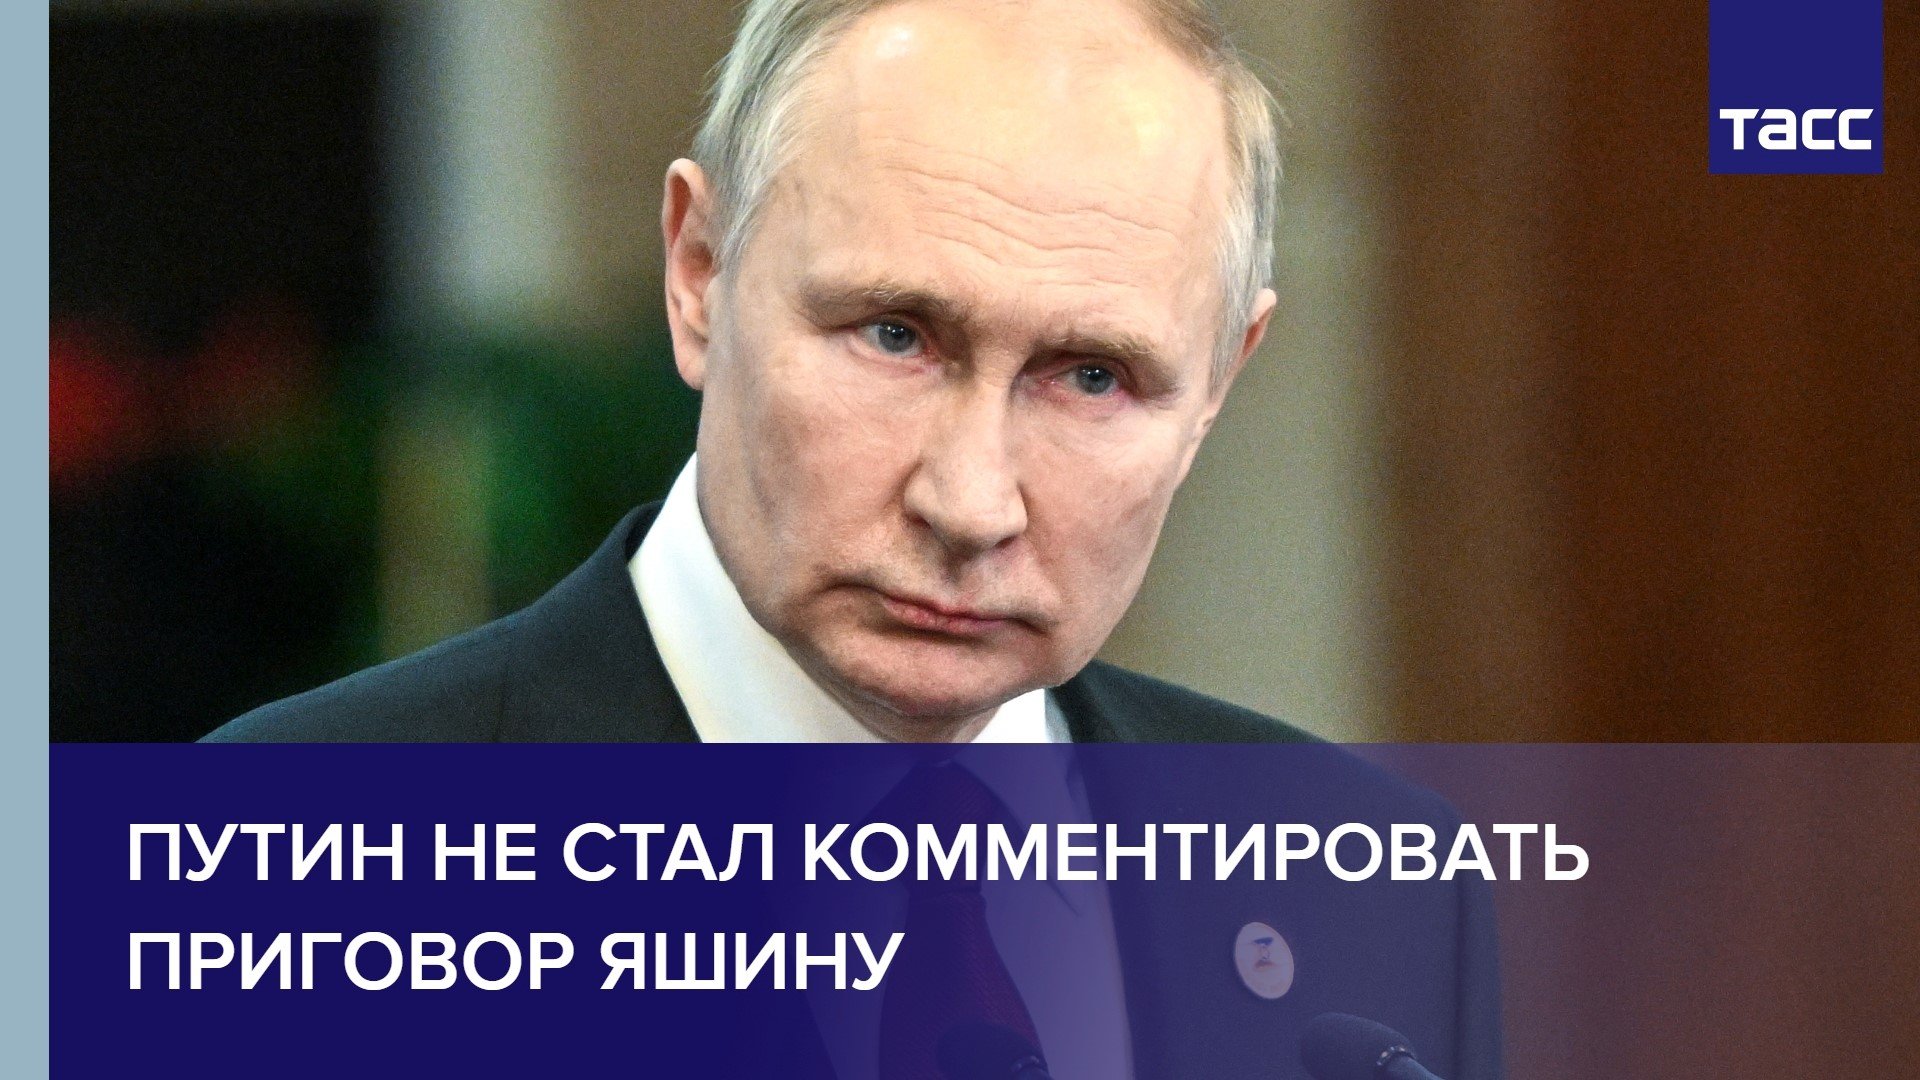 Путин не стал комментировать приговор Яшину #shorts